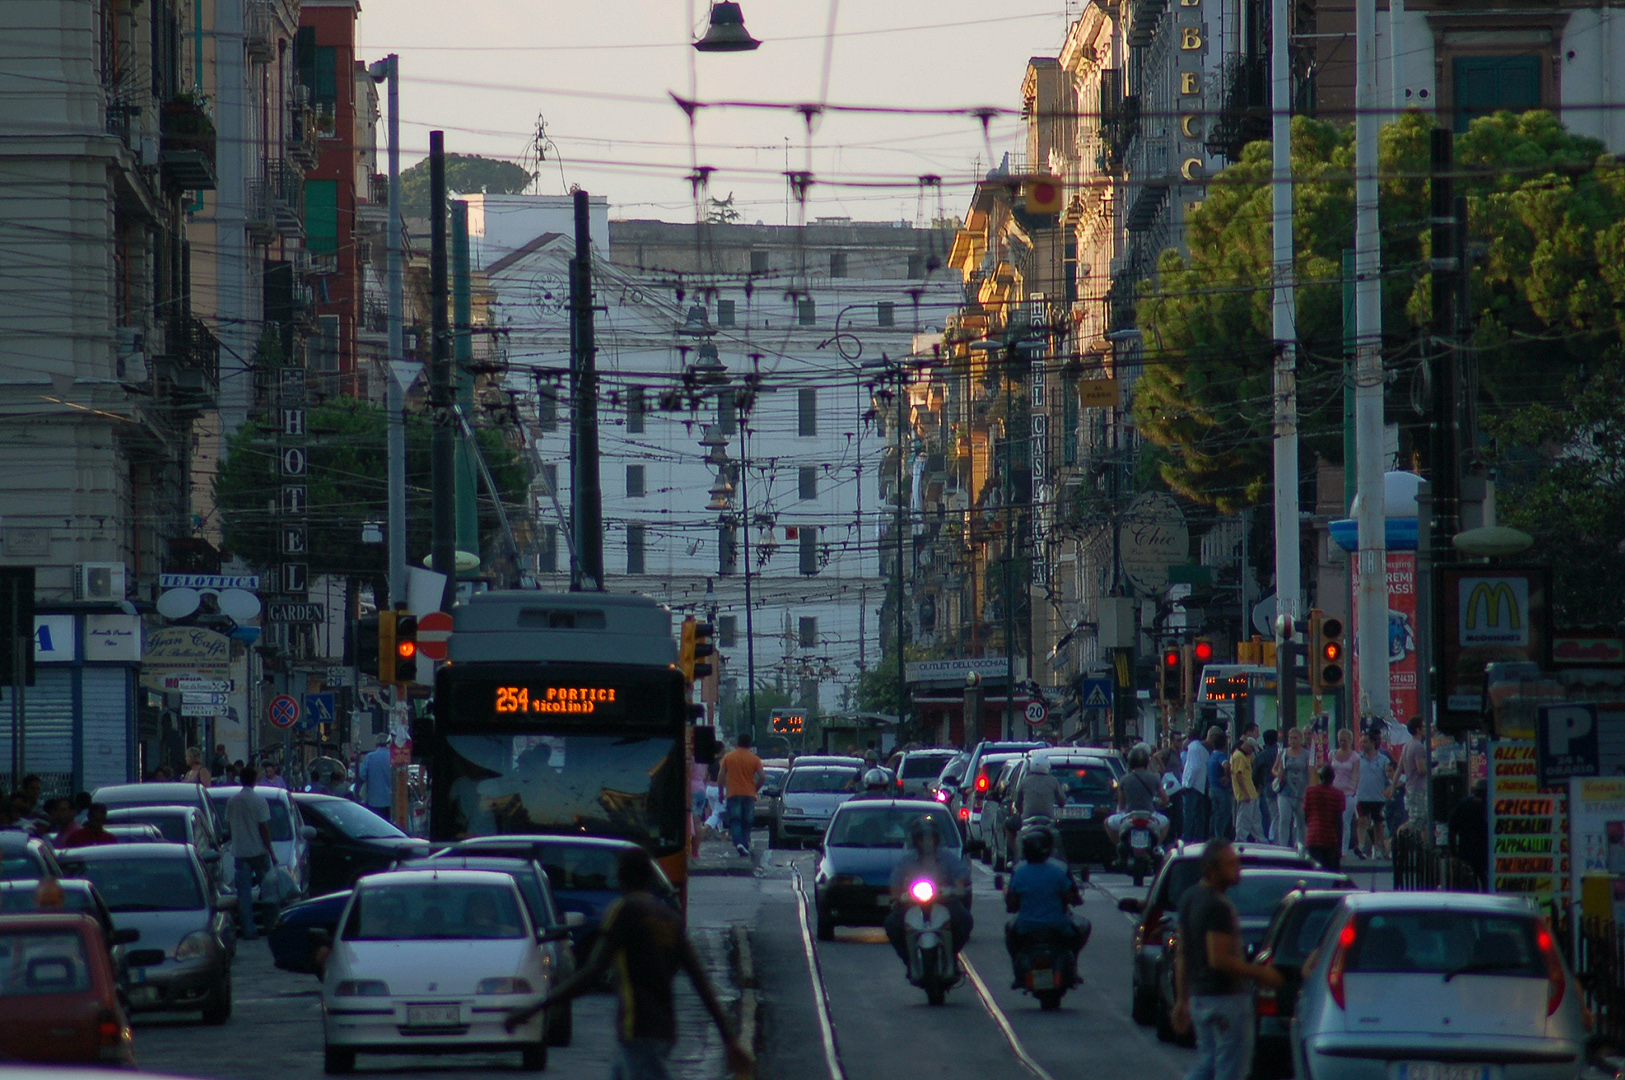 Corso Giuseppe Garibaldi, Napels (Campani), Corso Giuseppe Garibaldi, Naples (Italy)